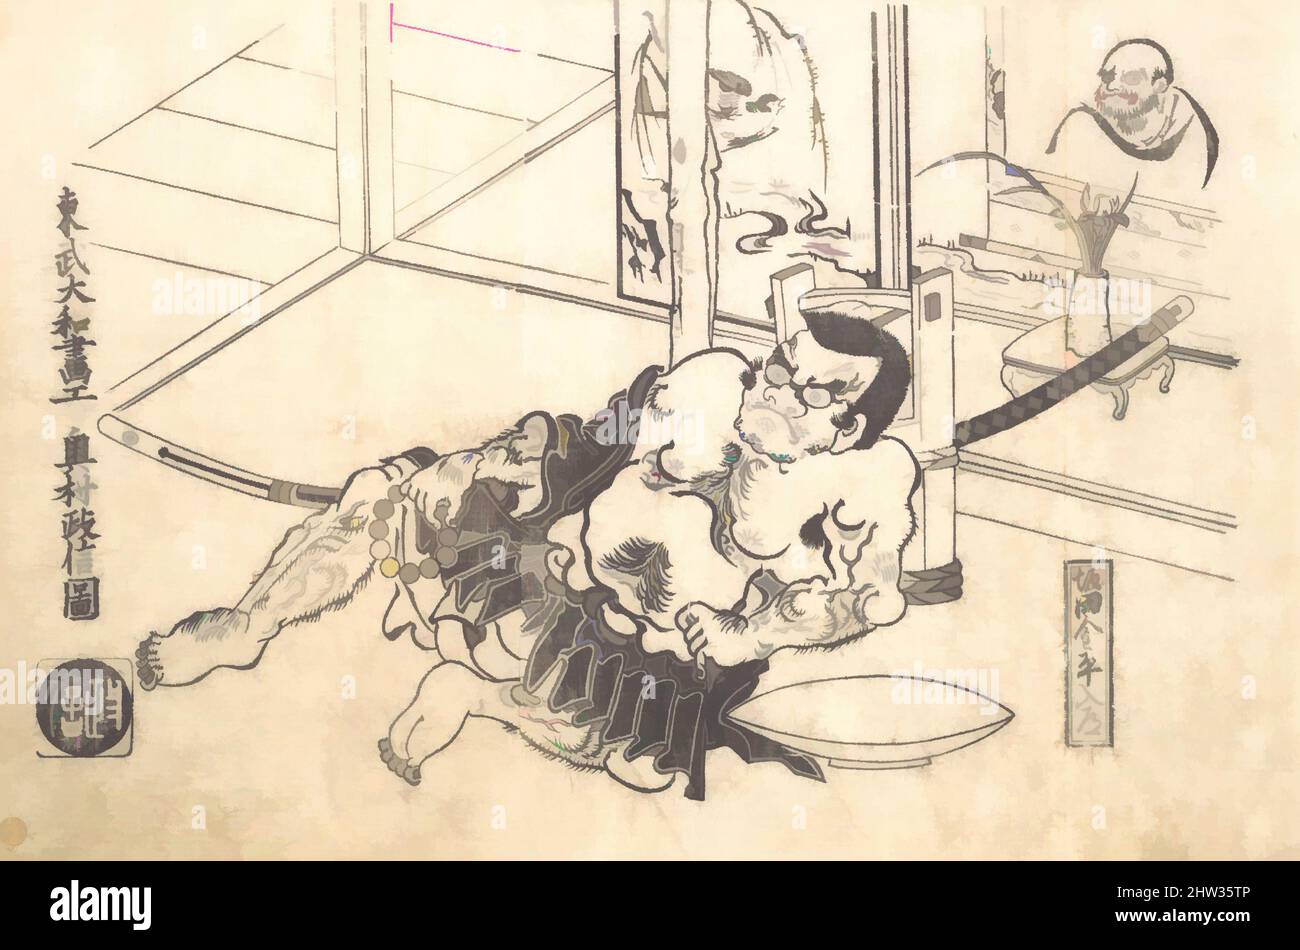 Art inspiré par Sakata Kinpira Nyudo, époque Edo (1615–1868), début du 18th siècle, Japon, imprimé en blocs de bois monochrome; encre et couleur sur papier, 9 7/8 x 14 3/4 cm (25,1 x 37,5 cm), Prints, Okumura Masanobu (japonais, 1686–1764), Masanobu combine l'observateur encadré avec une autre œuvre classique populaire modernisée par Artotop avec une touche de modernité. Formes, couleur et valeur, impact visuel accrocheur sur l'art émotions par la liberté d'œuvres d'art d'une manière contemporaine. Un message intemporel qui cherche une nouvelle direction créative. Artistes qui se tournent vers le support numérique et créent le NFT Artotop Banque D'Images